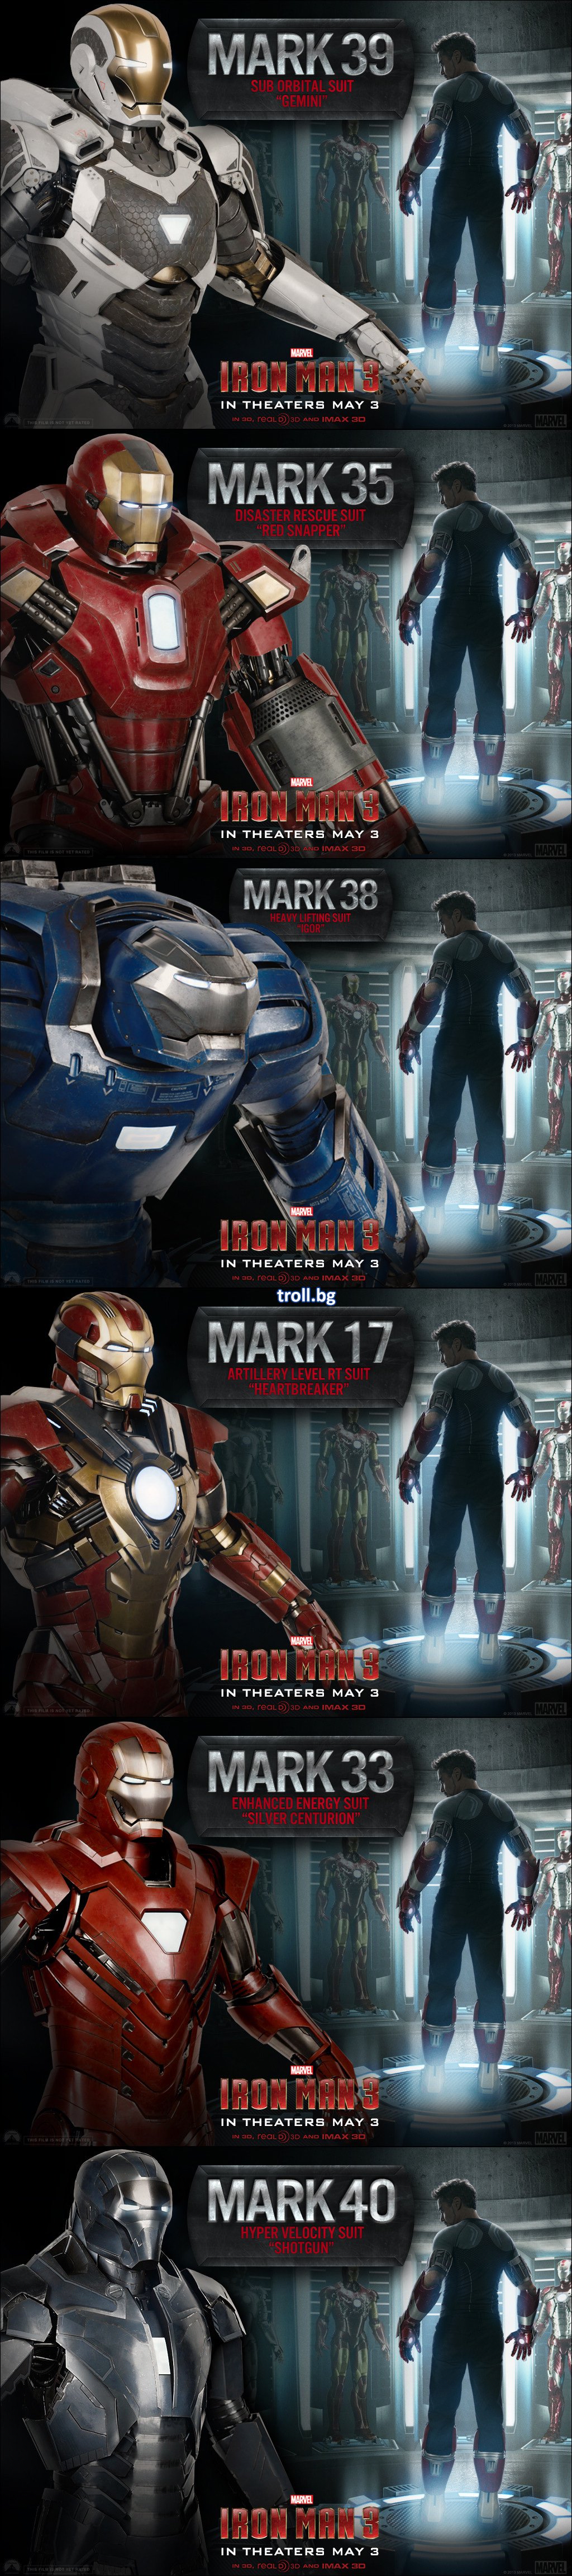 Снимки! Iron Man 3 новите костюми!